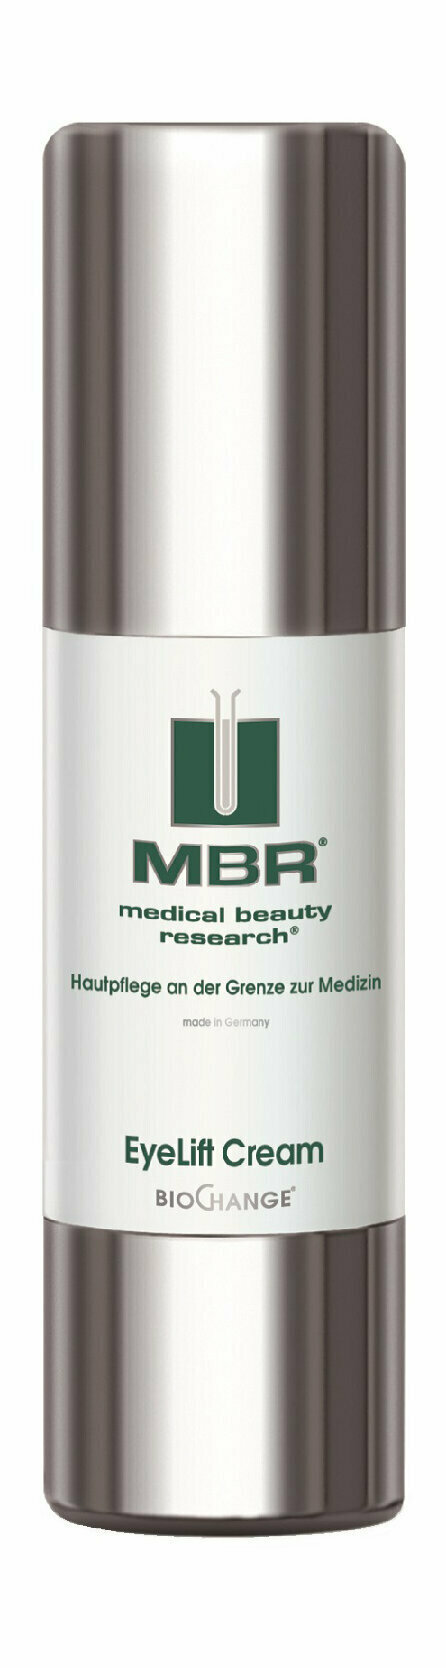 MBR Bio Change Eye Lift Cream Крем для области вокруг глаз с лифтинг-эффектом, 30 мл